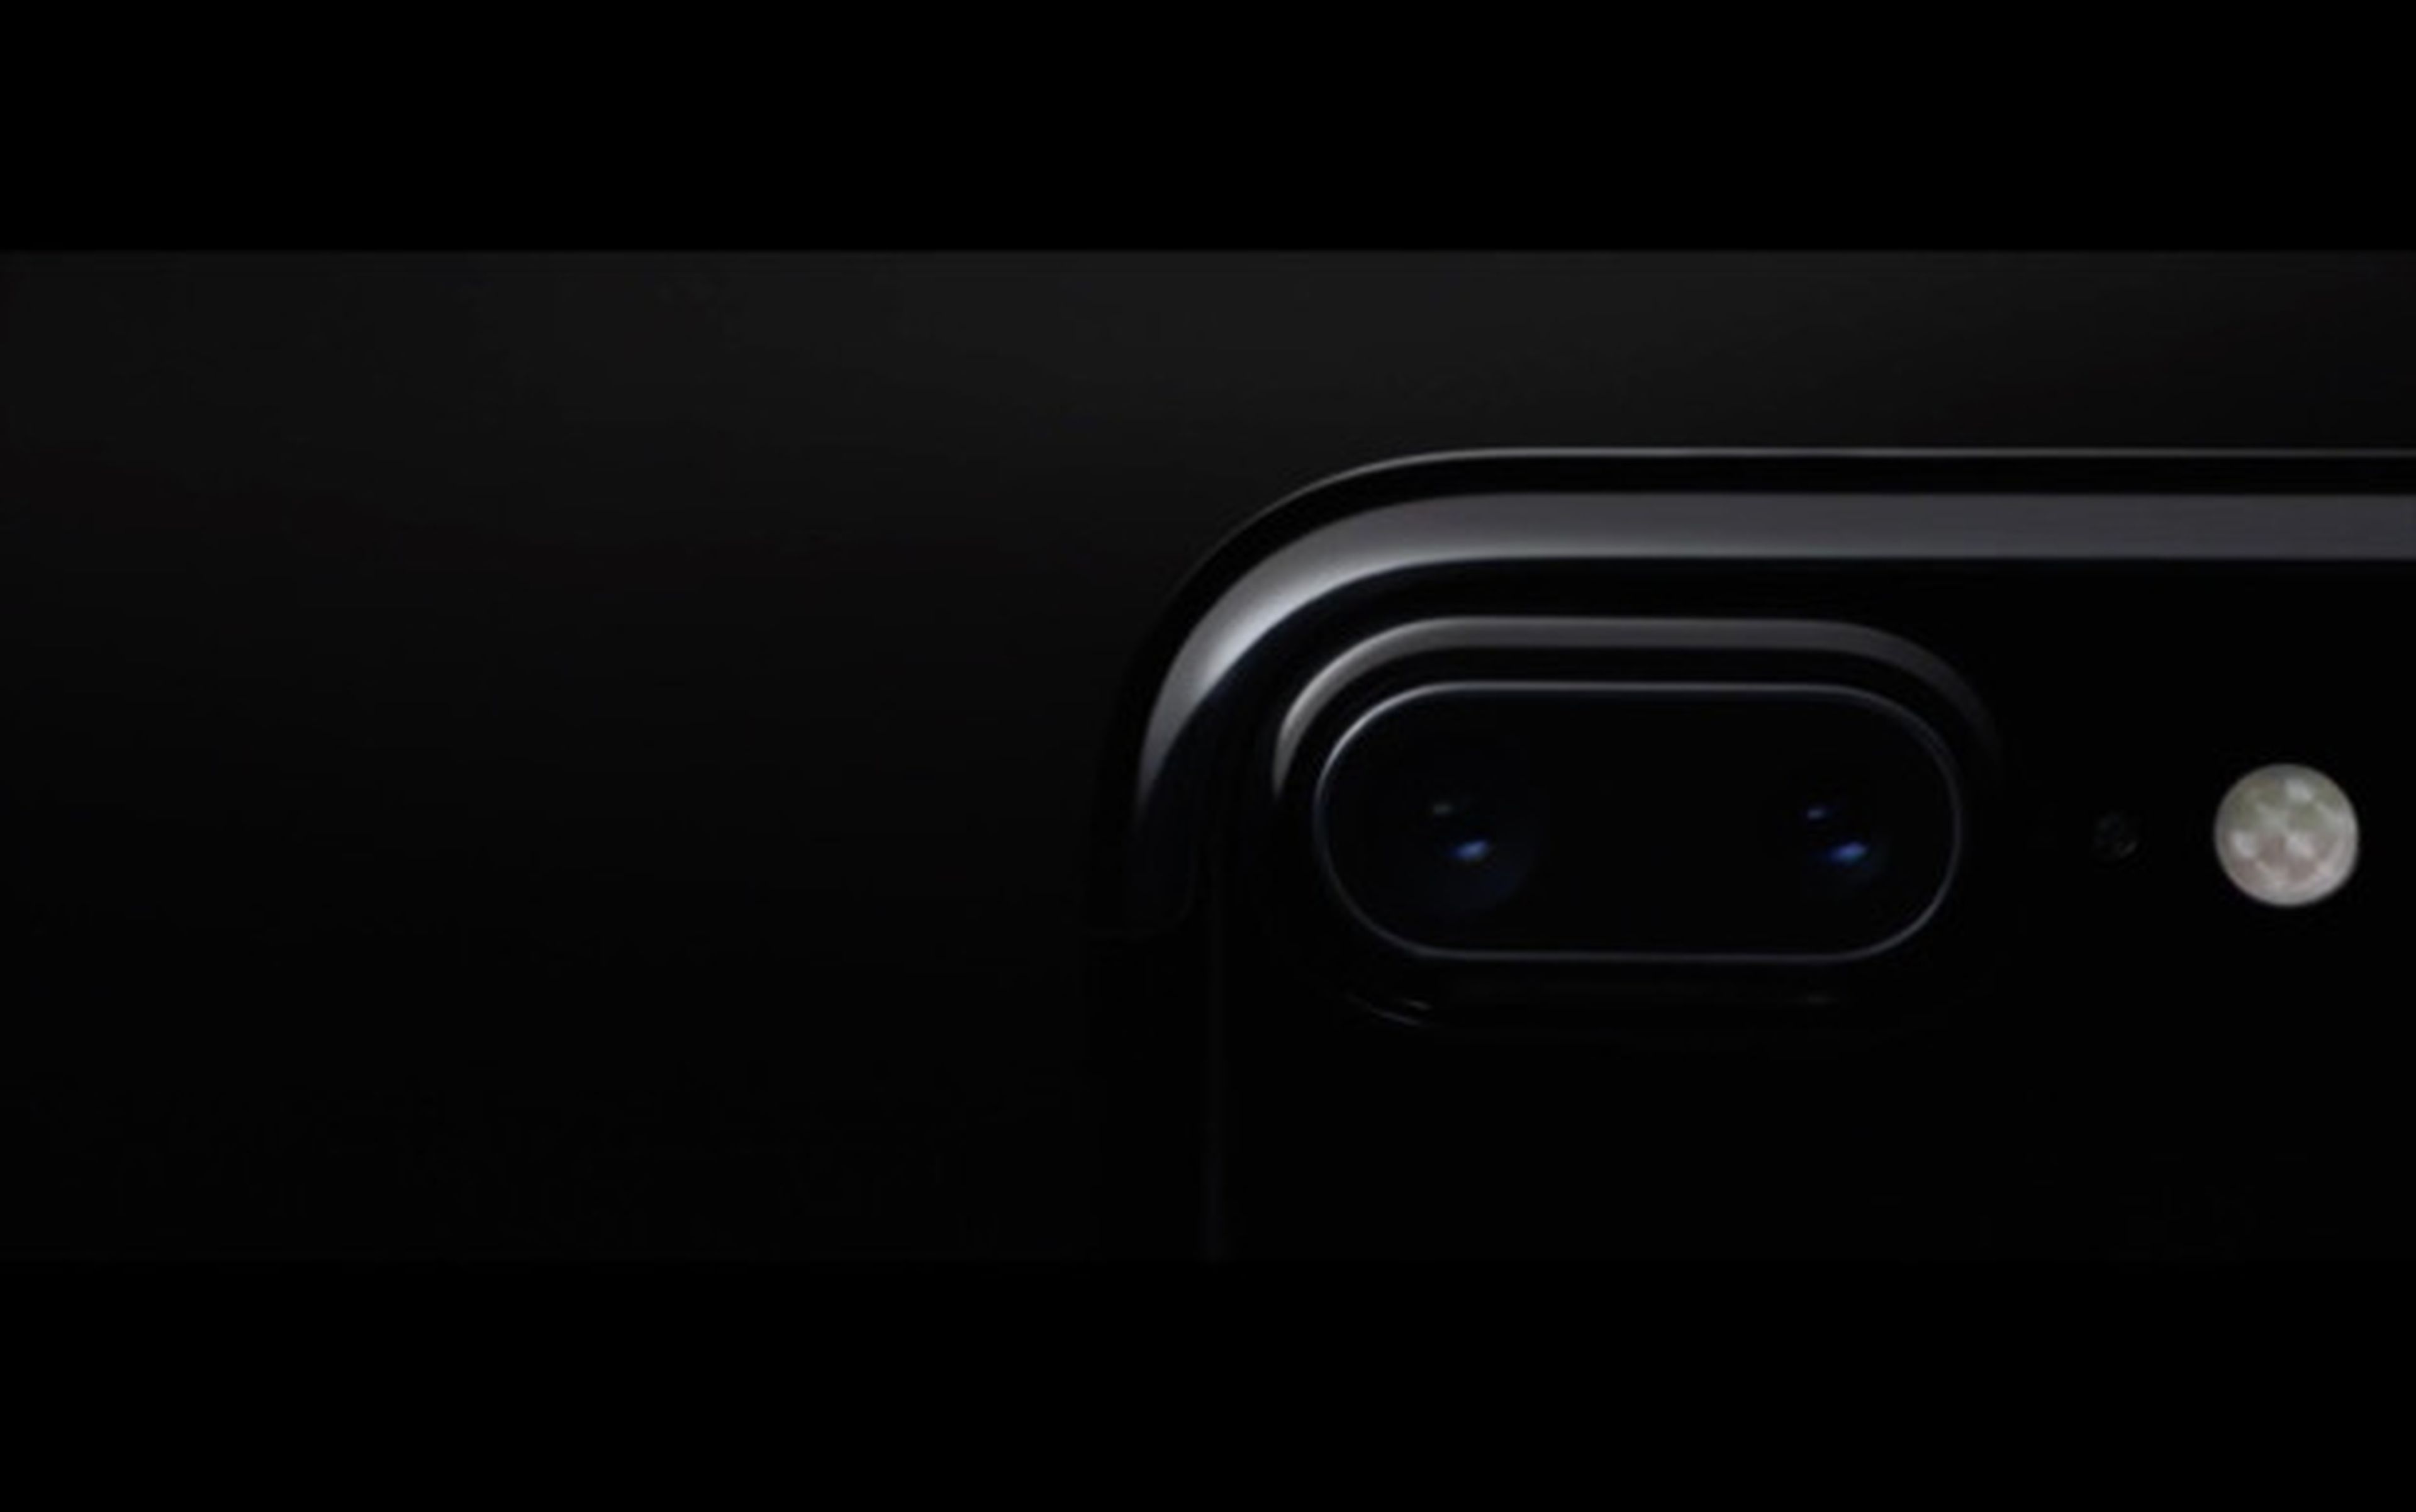 Apple presenta el iPhone 7 Plus: todas sus características